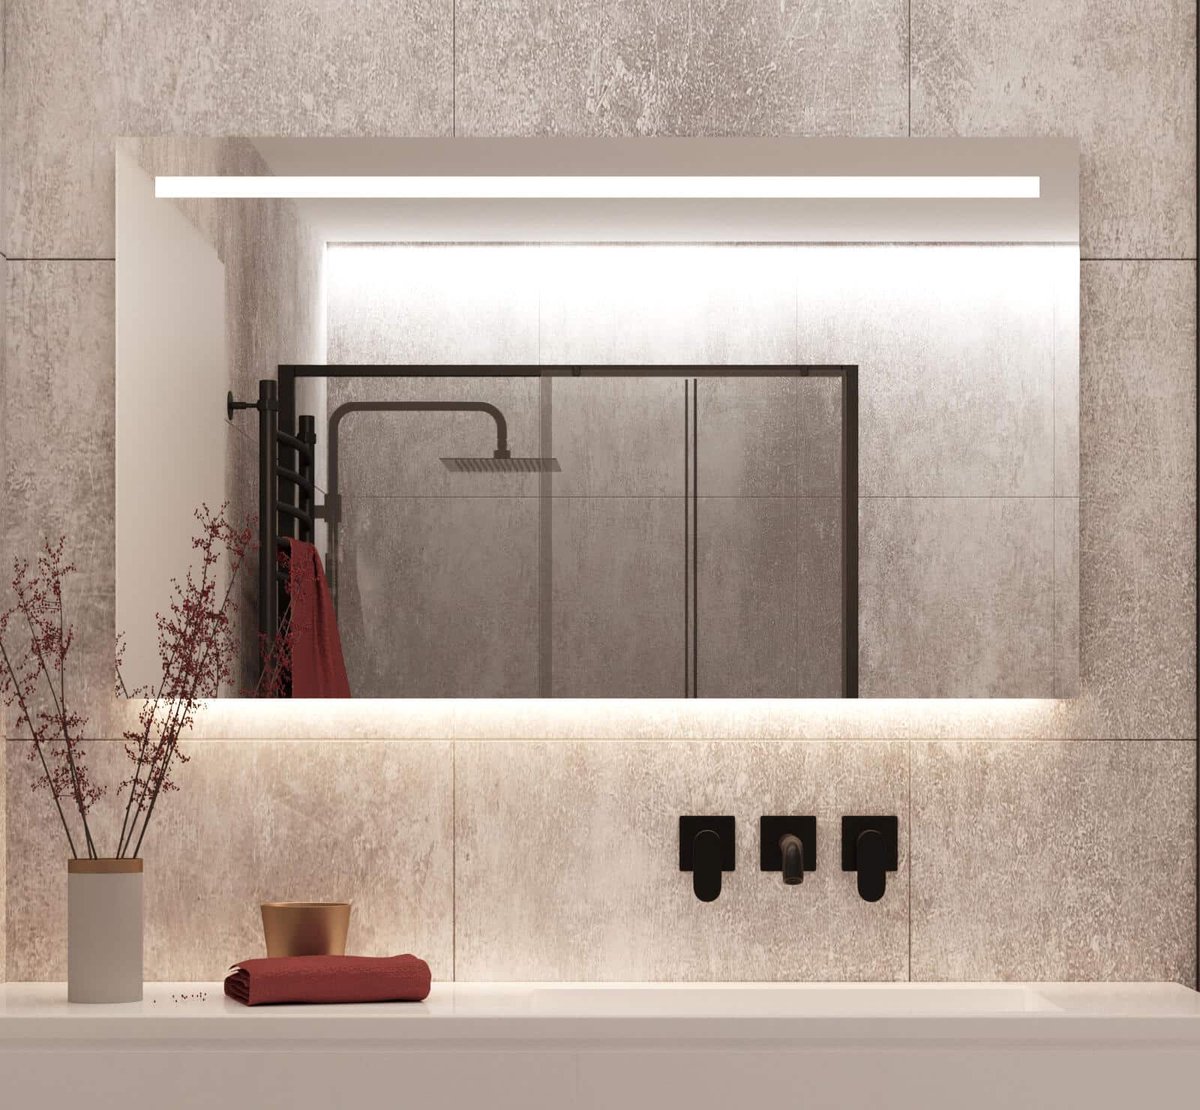 Badkamerspiegel met LED verlichting, verwarming, sensor en dimfunctie 120x70 cm